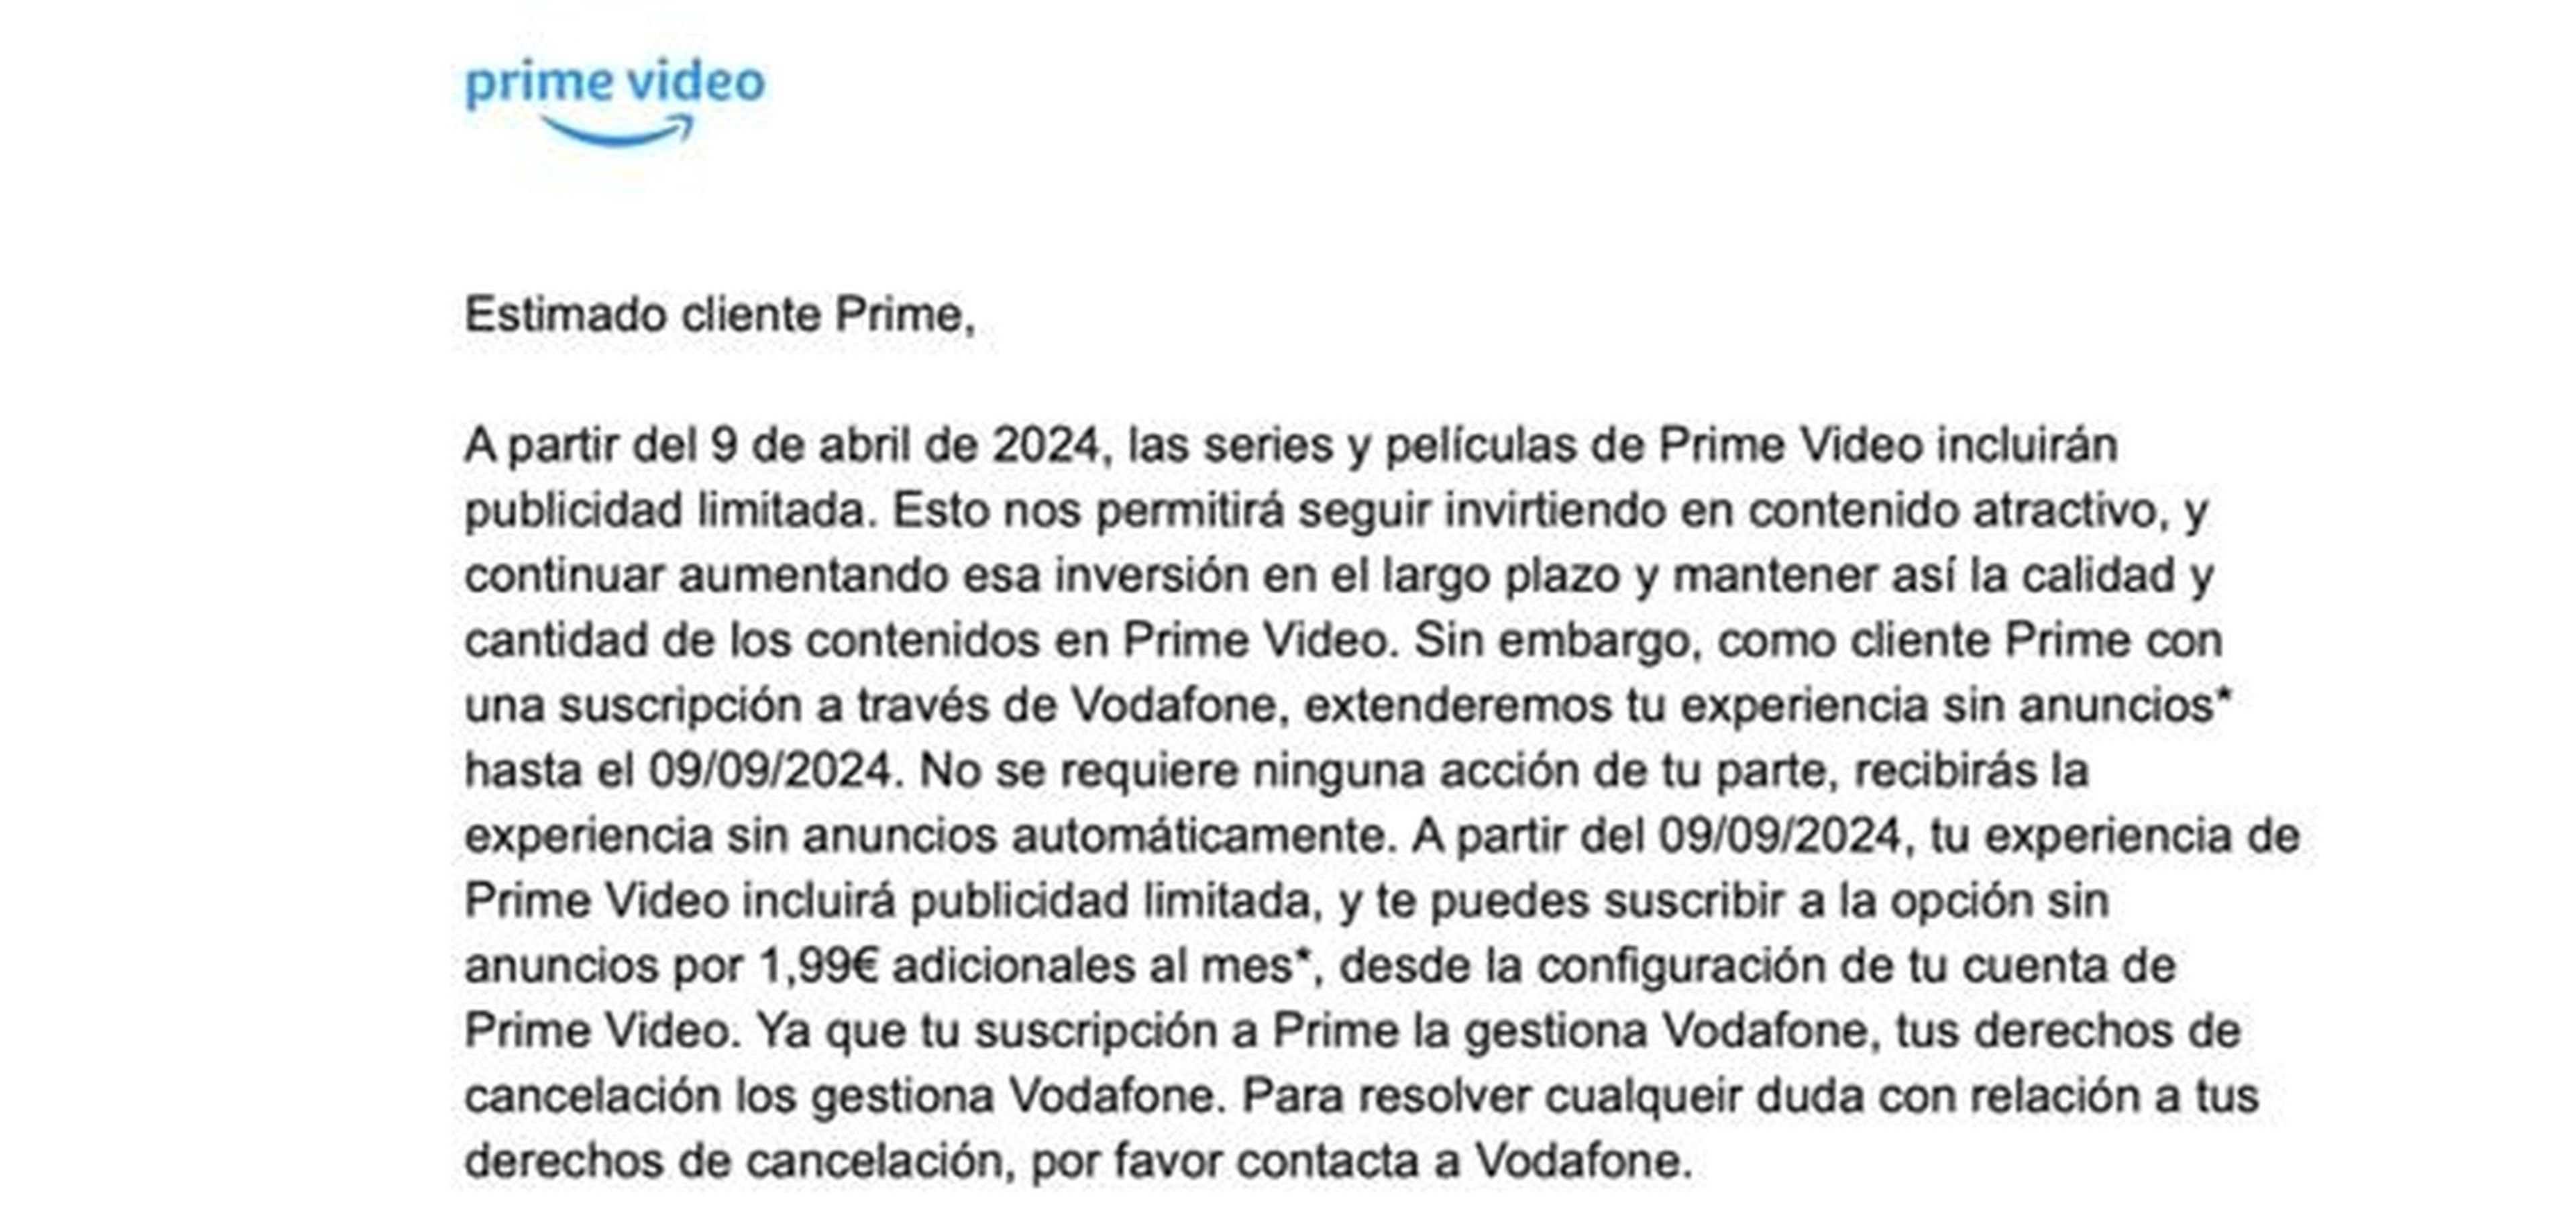 Amazon Prime Video sin anuncios